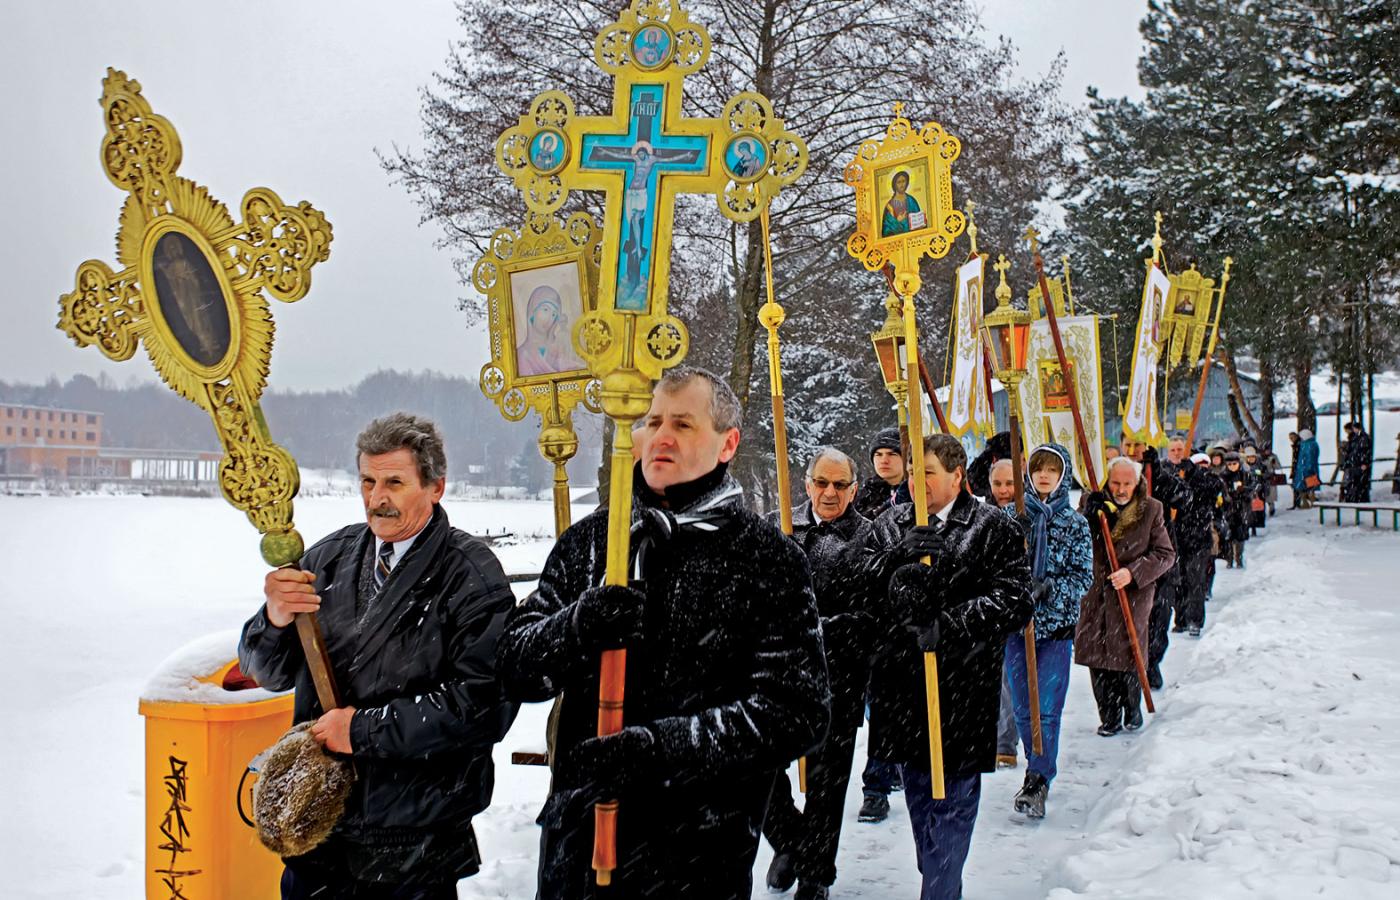 Procesja w Siematyczach. Ikony, kojarzone z prawosławiem, dziś stają się popularne wśród katolików, a ich malowanie nabiera czasami cech popkulturowych.